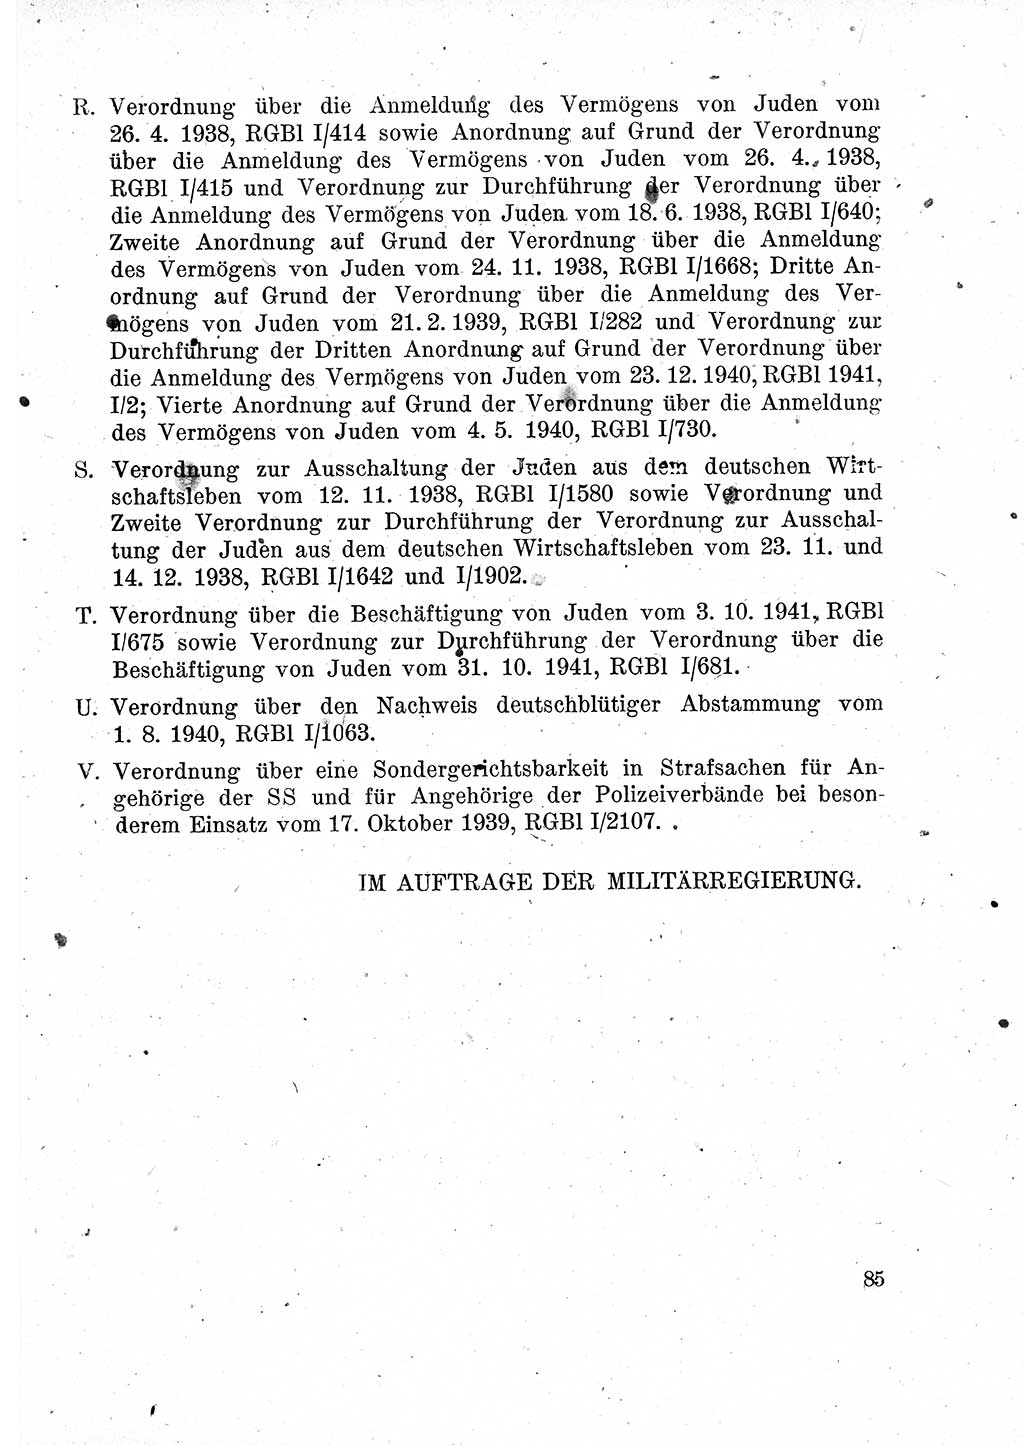 Das Recht der Besatzungsmacht (Deutschland), Proklamationen, Deklerationen, Verordnungen, Gesetze und Bekanntmachungen 1947, Seite 85 (R. Bes. Dtl. 1947, S. 85)